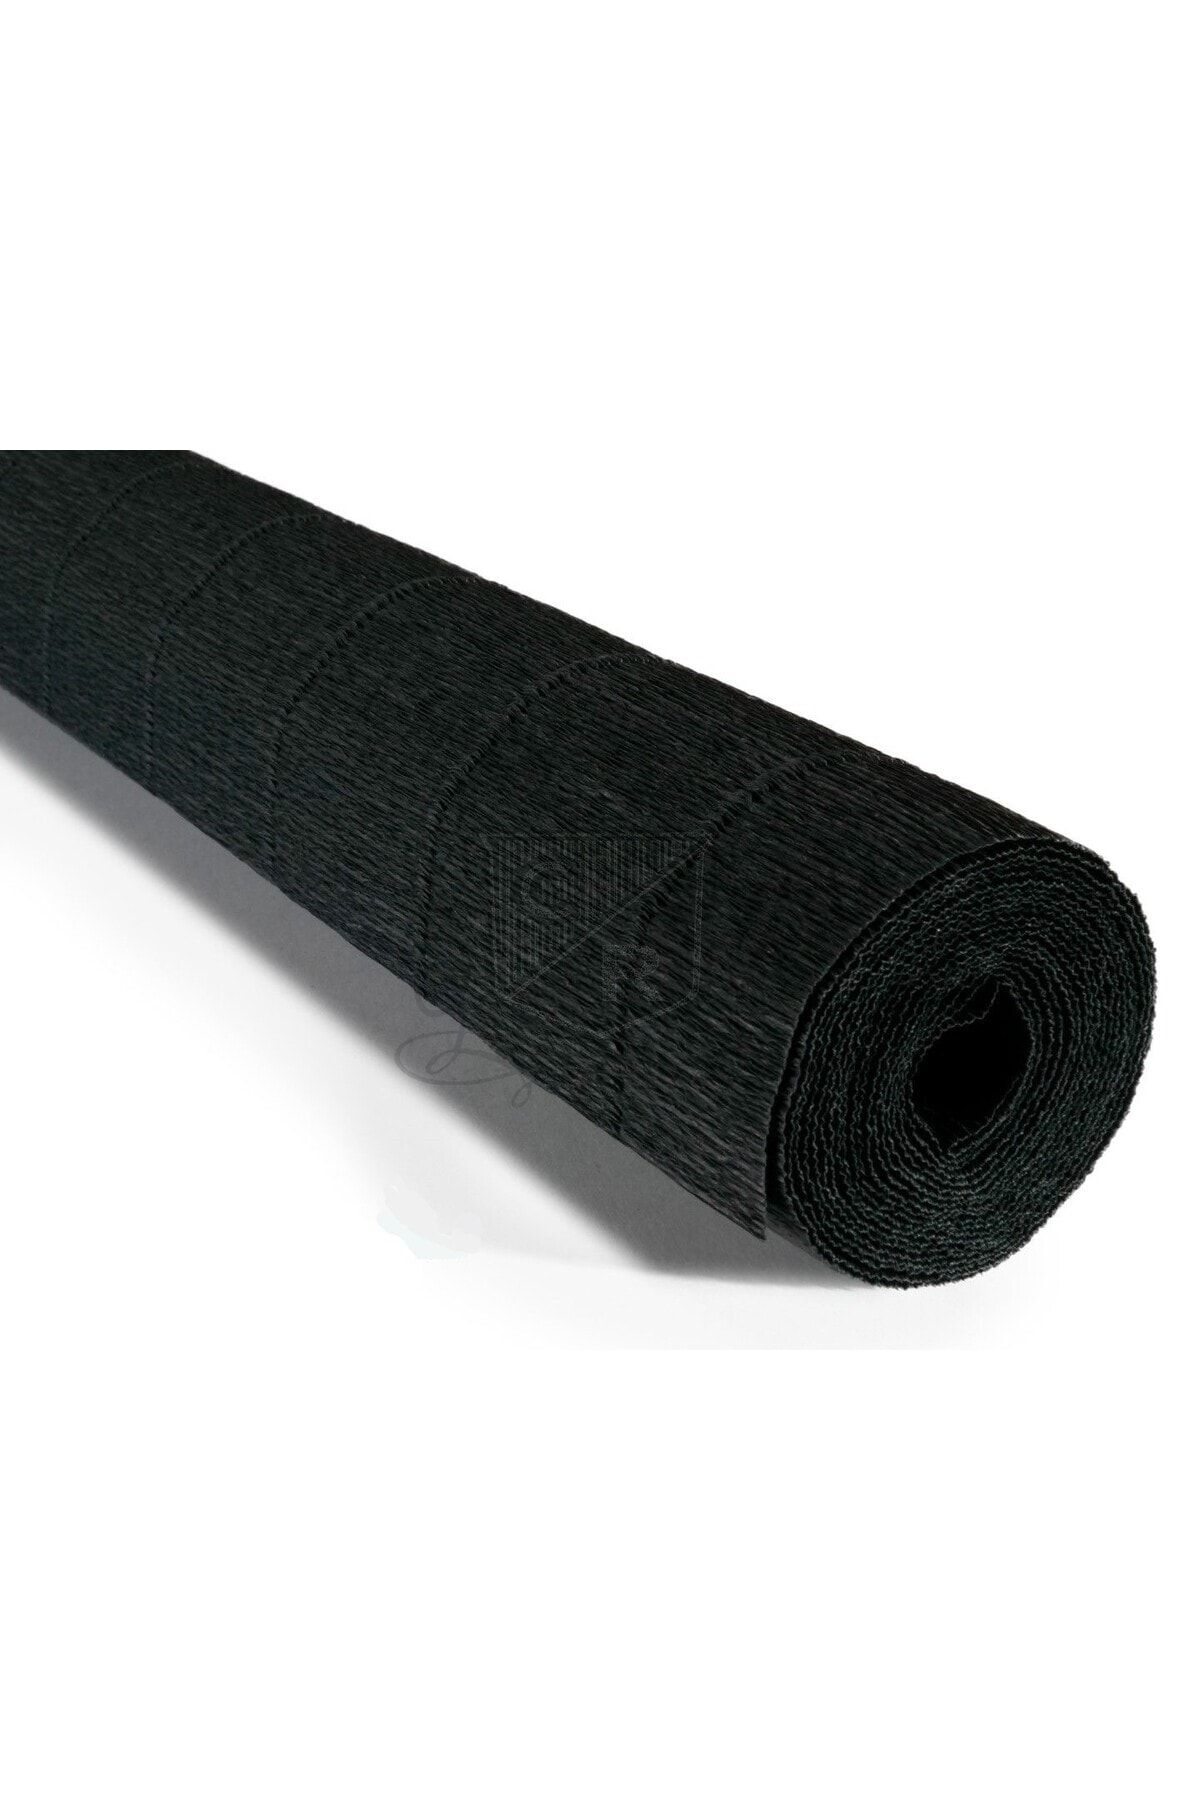 roco paper Italyan Krapon Kağıdı No:602 - Siyah - Black 180 Gr. 50x250 Cm